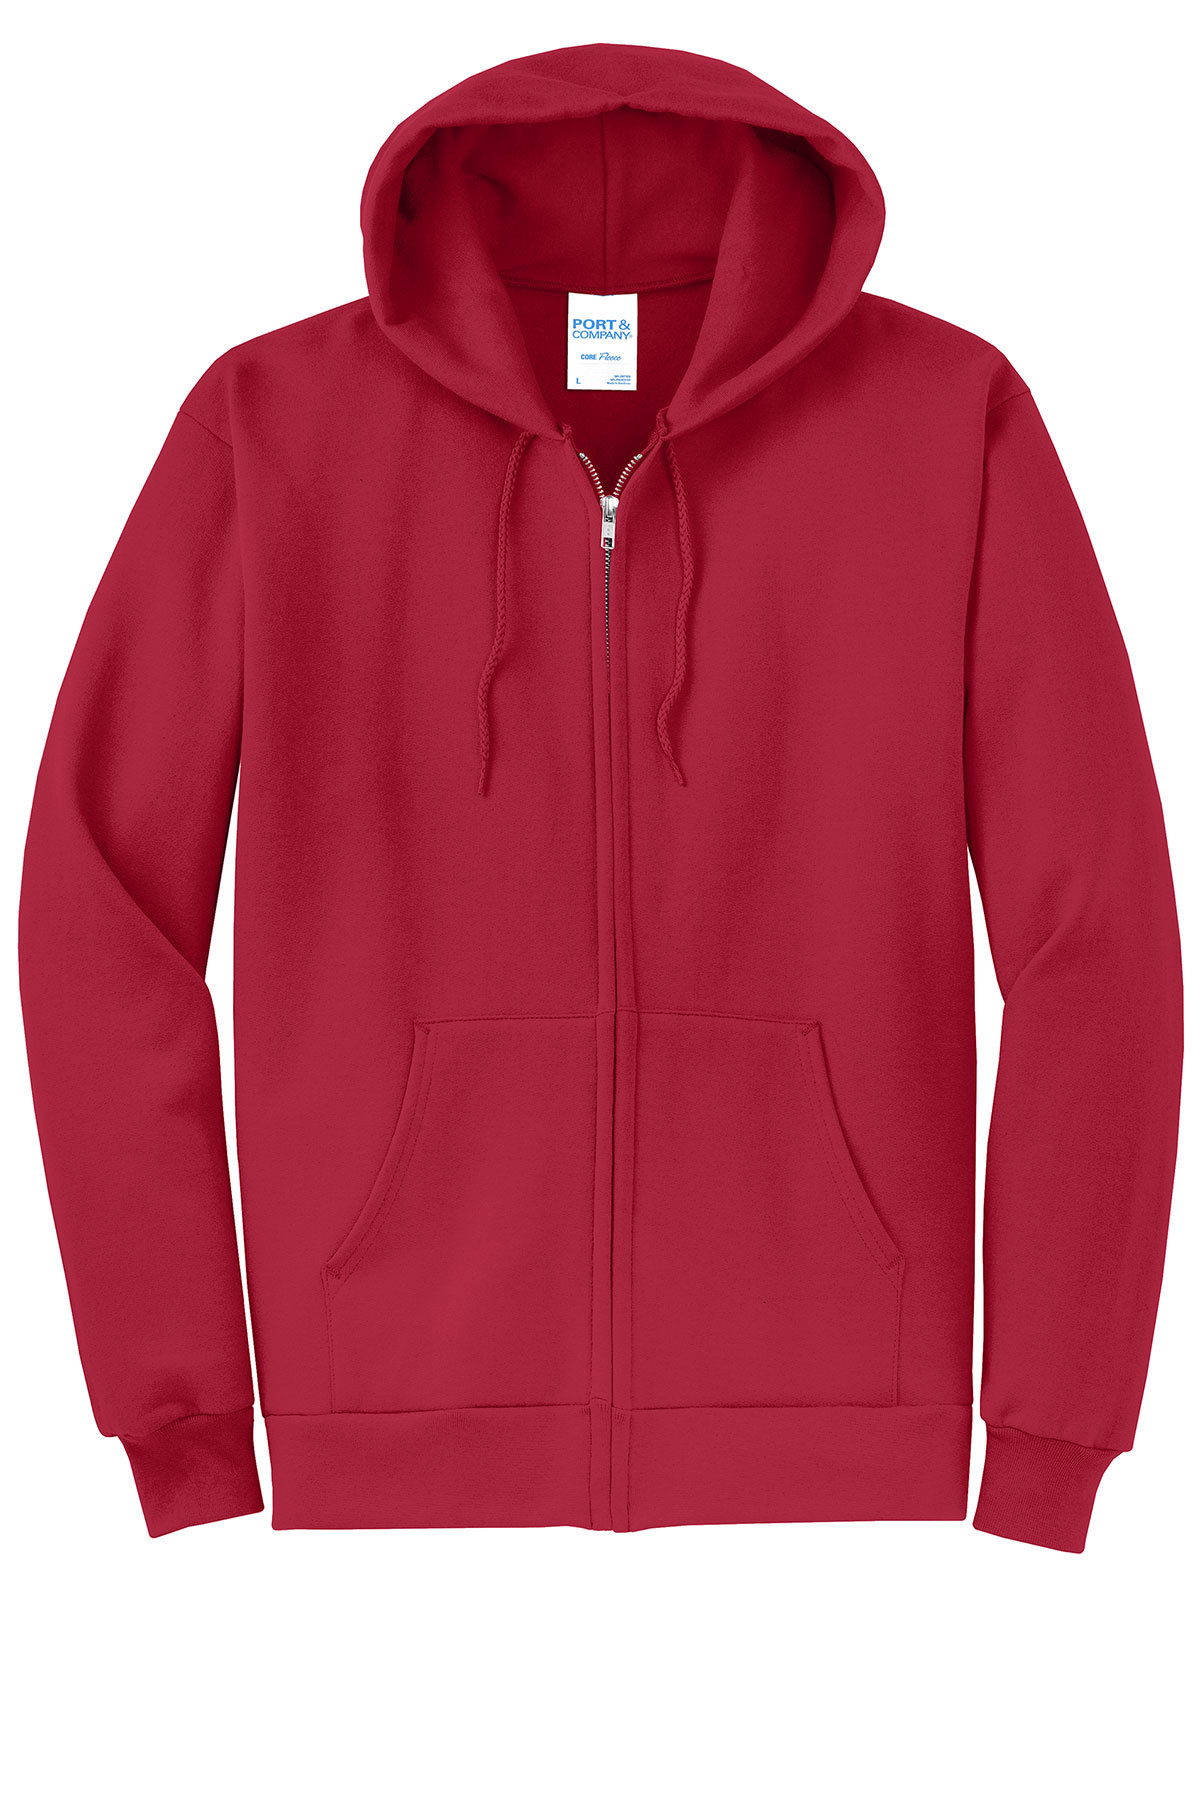 Port & Company-Core Fleece Full-Zip Hooded Sweatshirt PC78ZH Kelly 